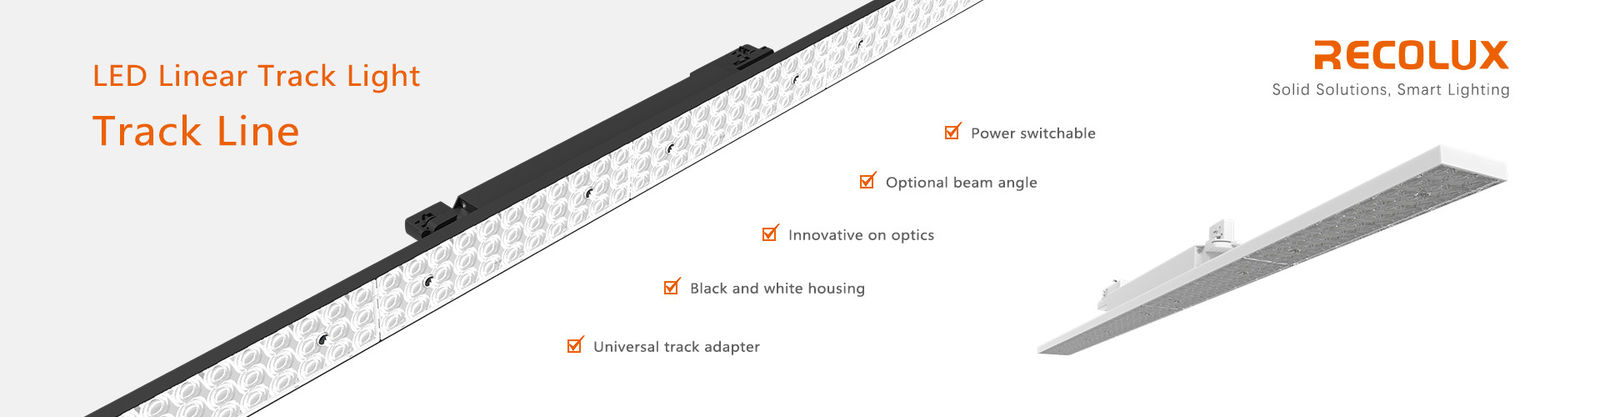 LED Linear Track Lighting